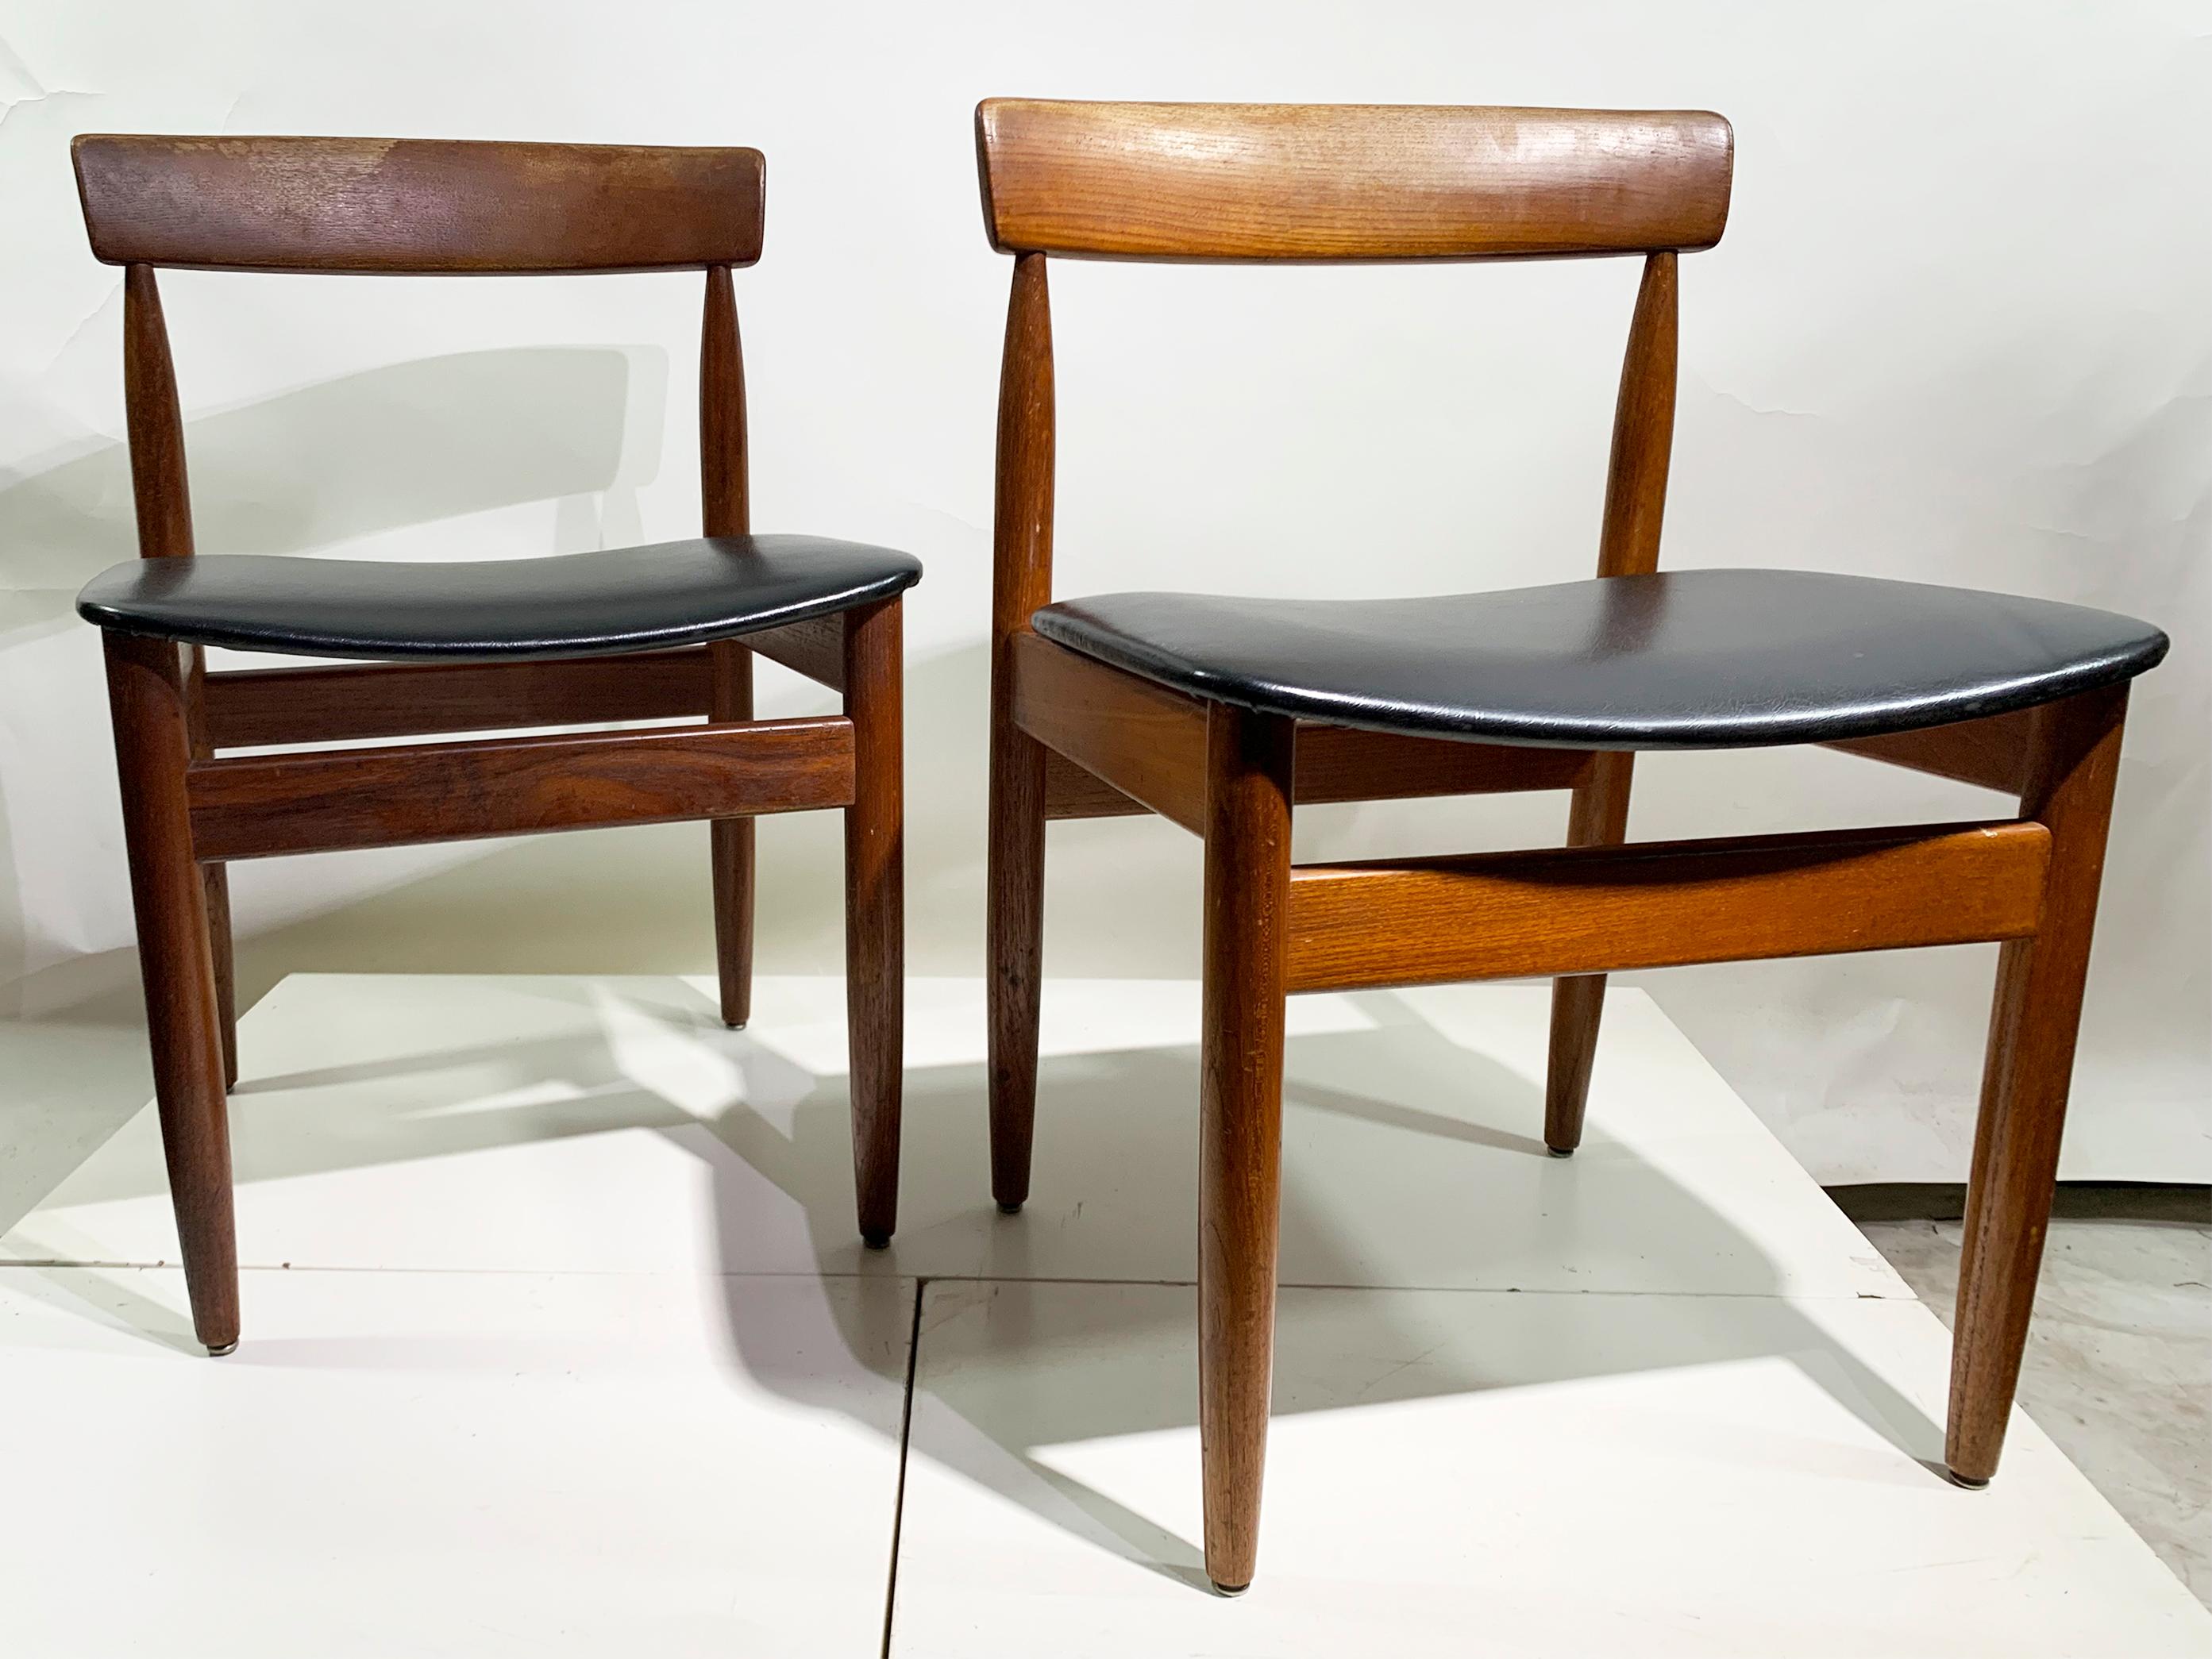 Diese skandinavischen Esszimmerstühle, die die Essenz des modernen Designs der Jahrhundertmitte verkörpern, zeichnen sich durch sorgfältige Handwerkskunst aus. Jeder Stuhl verfügt über eine anmutig geschwungene, massive Paddle-Rückenlehne und